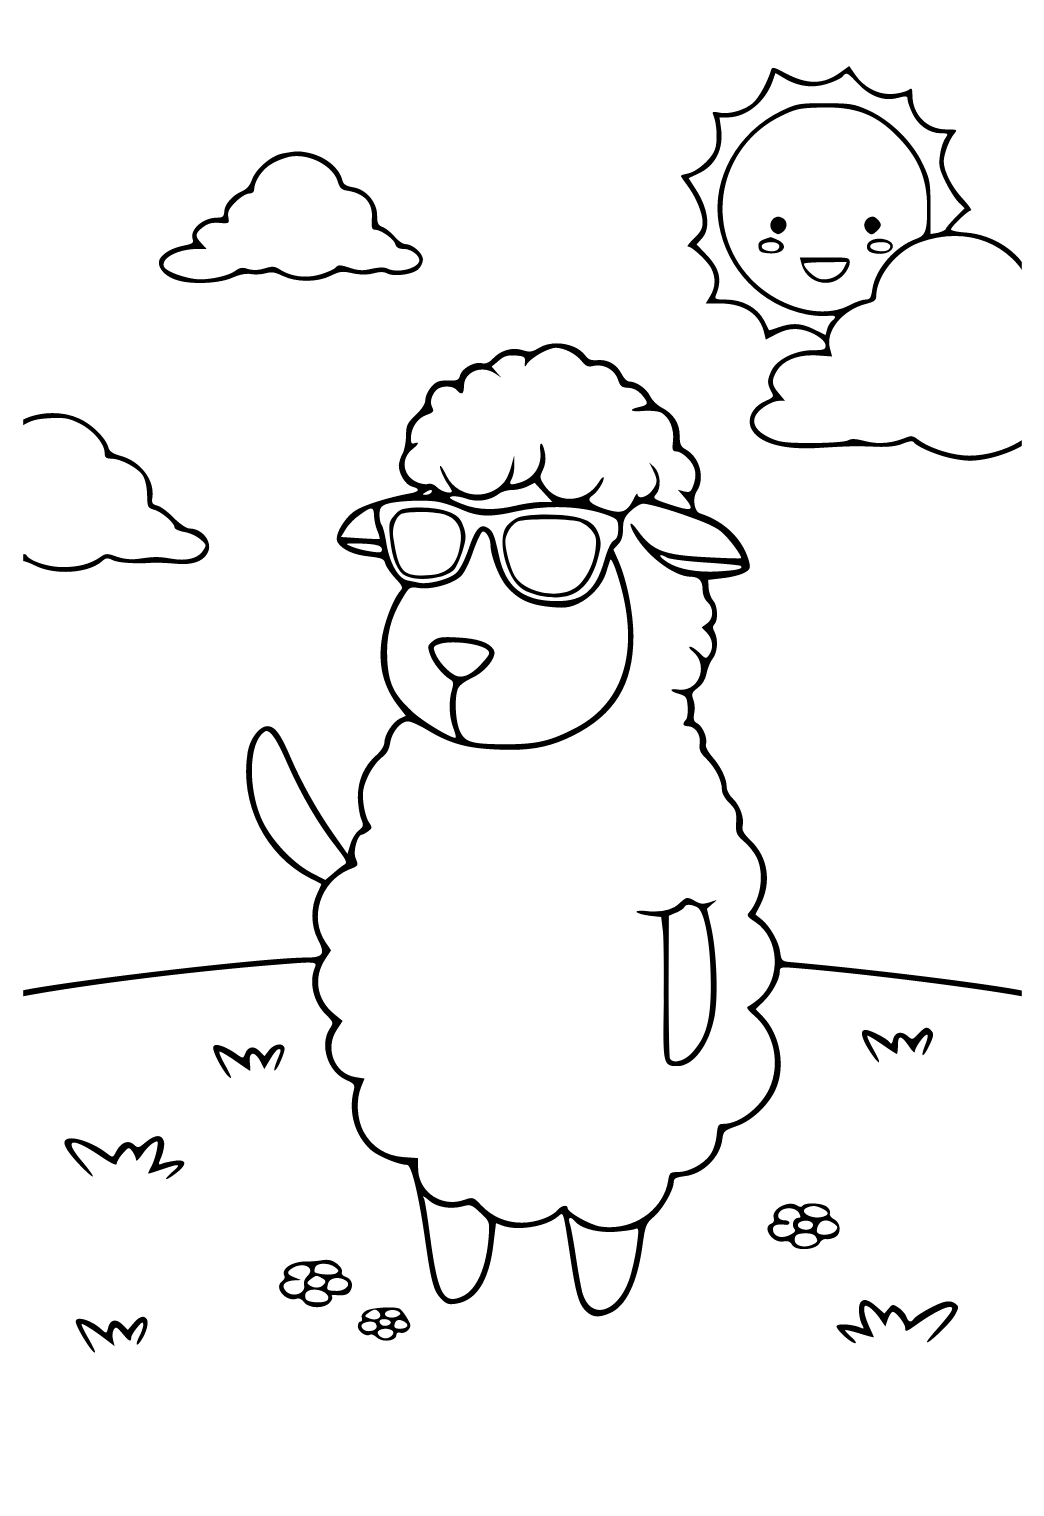 Mouton